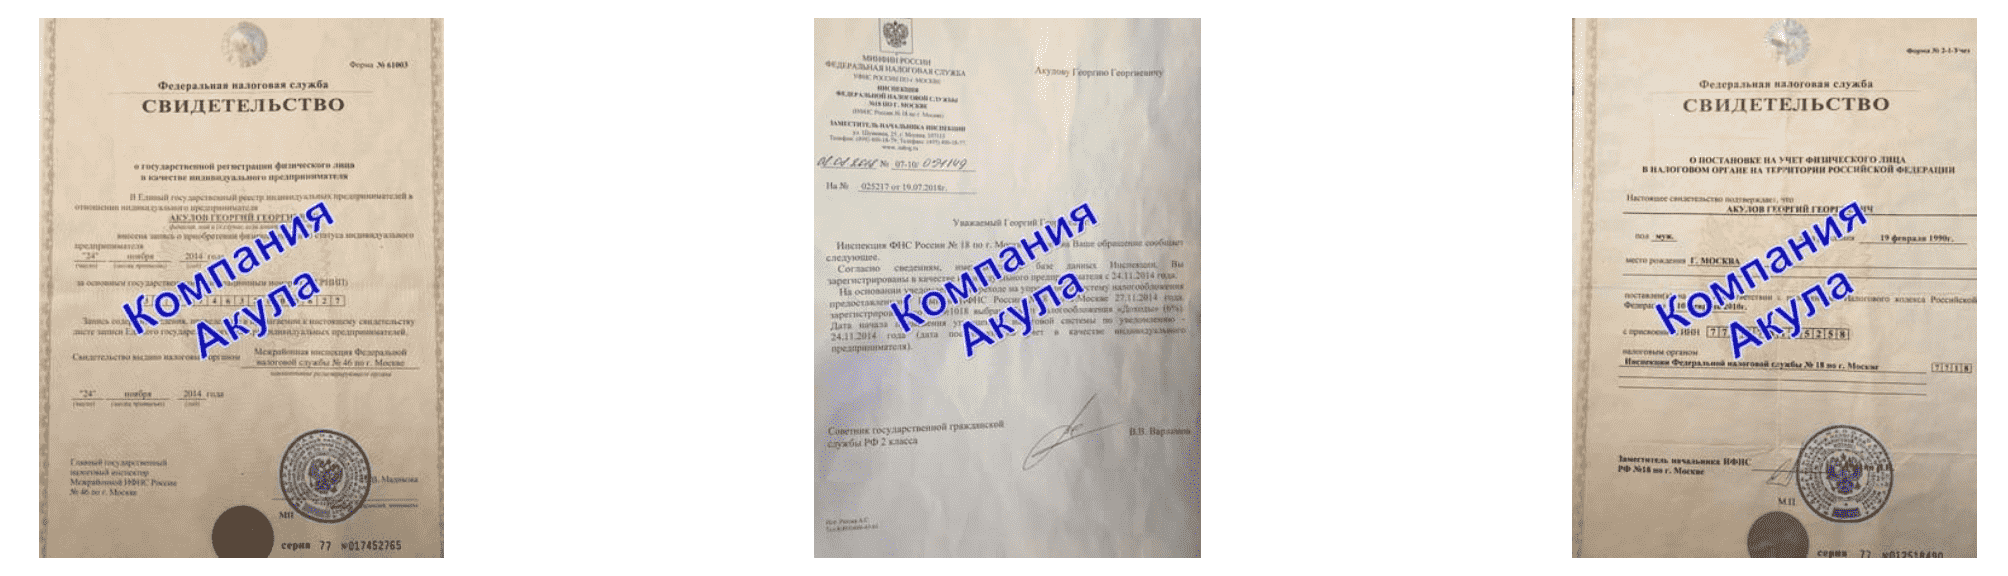 Документы компании по раздаче листовок Козьмодемьянск